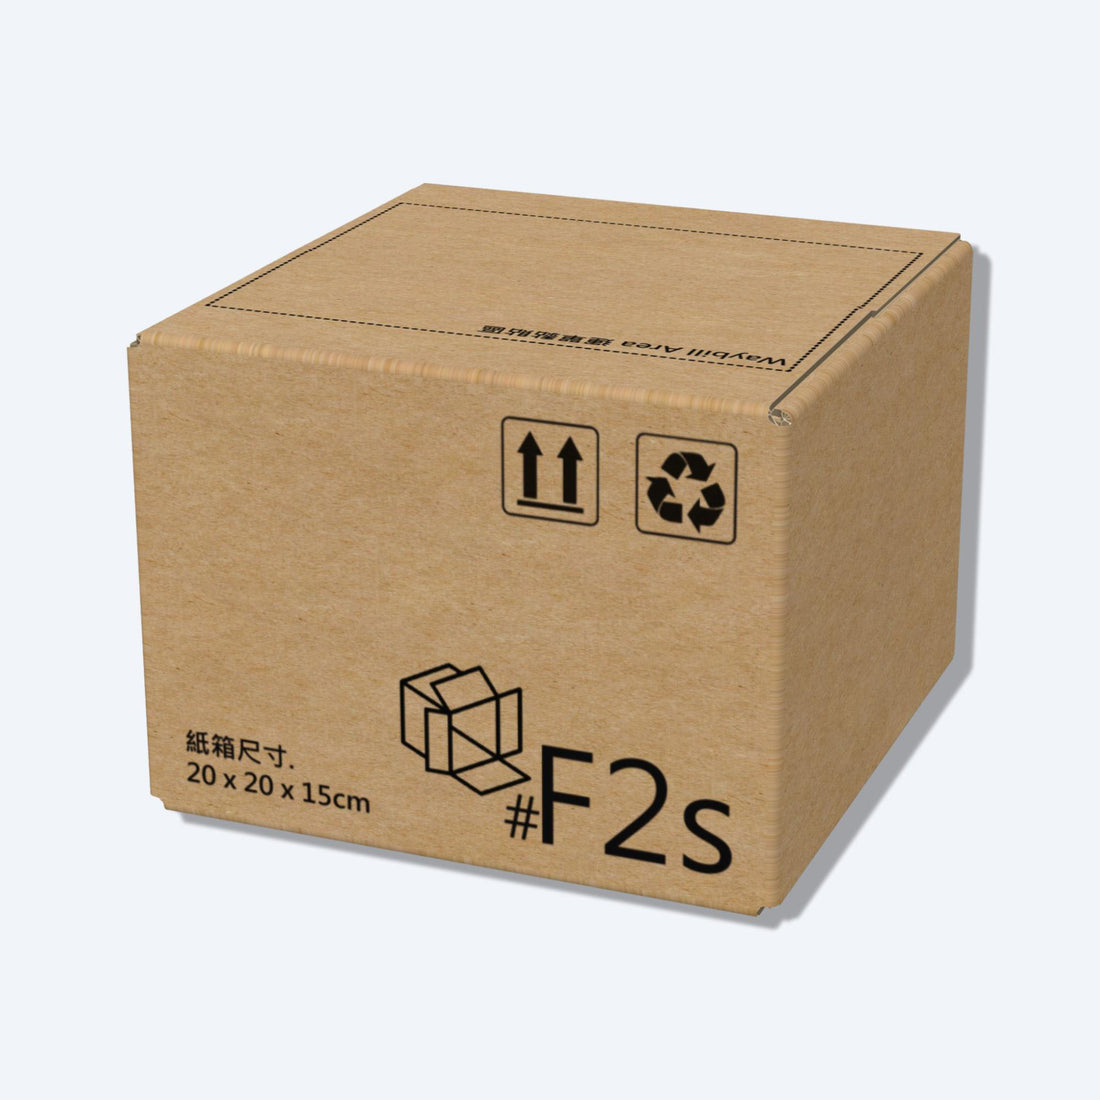 堅固的啡色順豐速運F2s尺寸紙箱正面圖，這款快遞紙箱專為順豐速運設計。堅固的啡色順豐速運F2尺寸紙箱正面圖，這款快遞紙箱專為順豐速運設計。